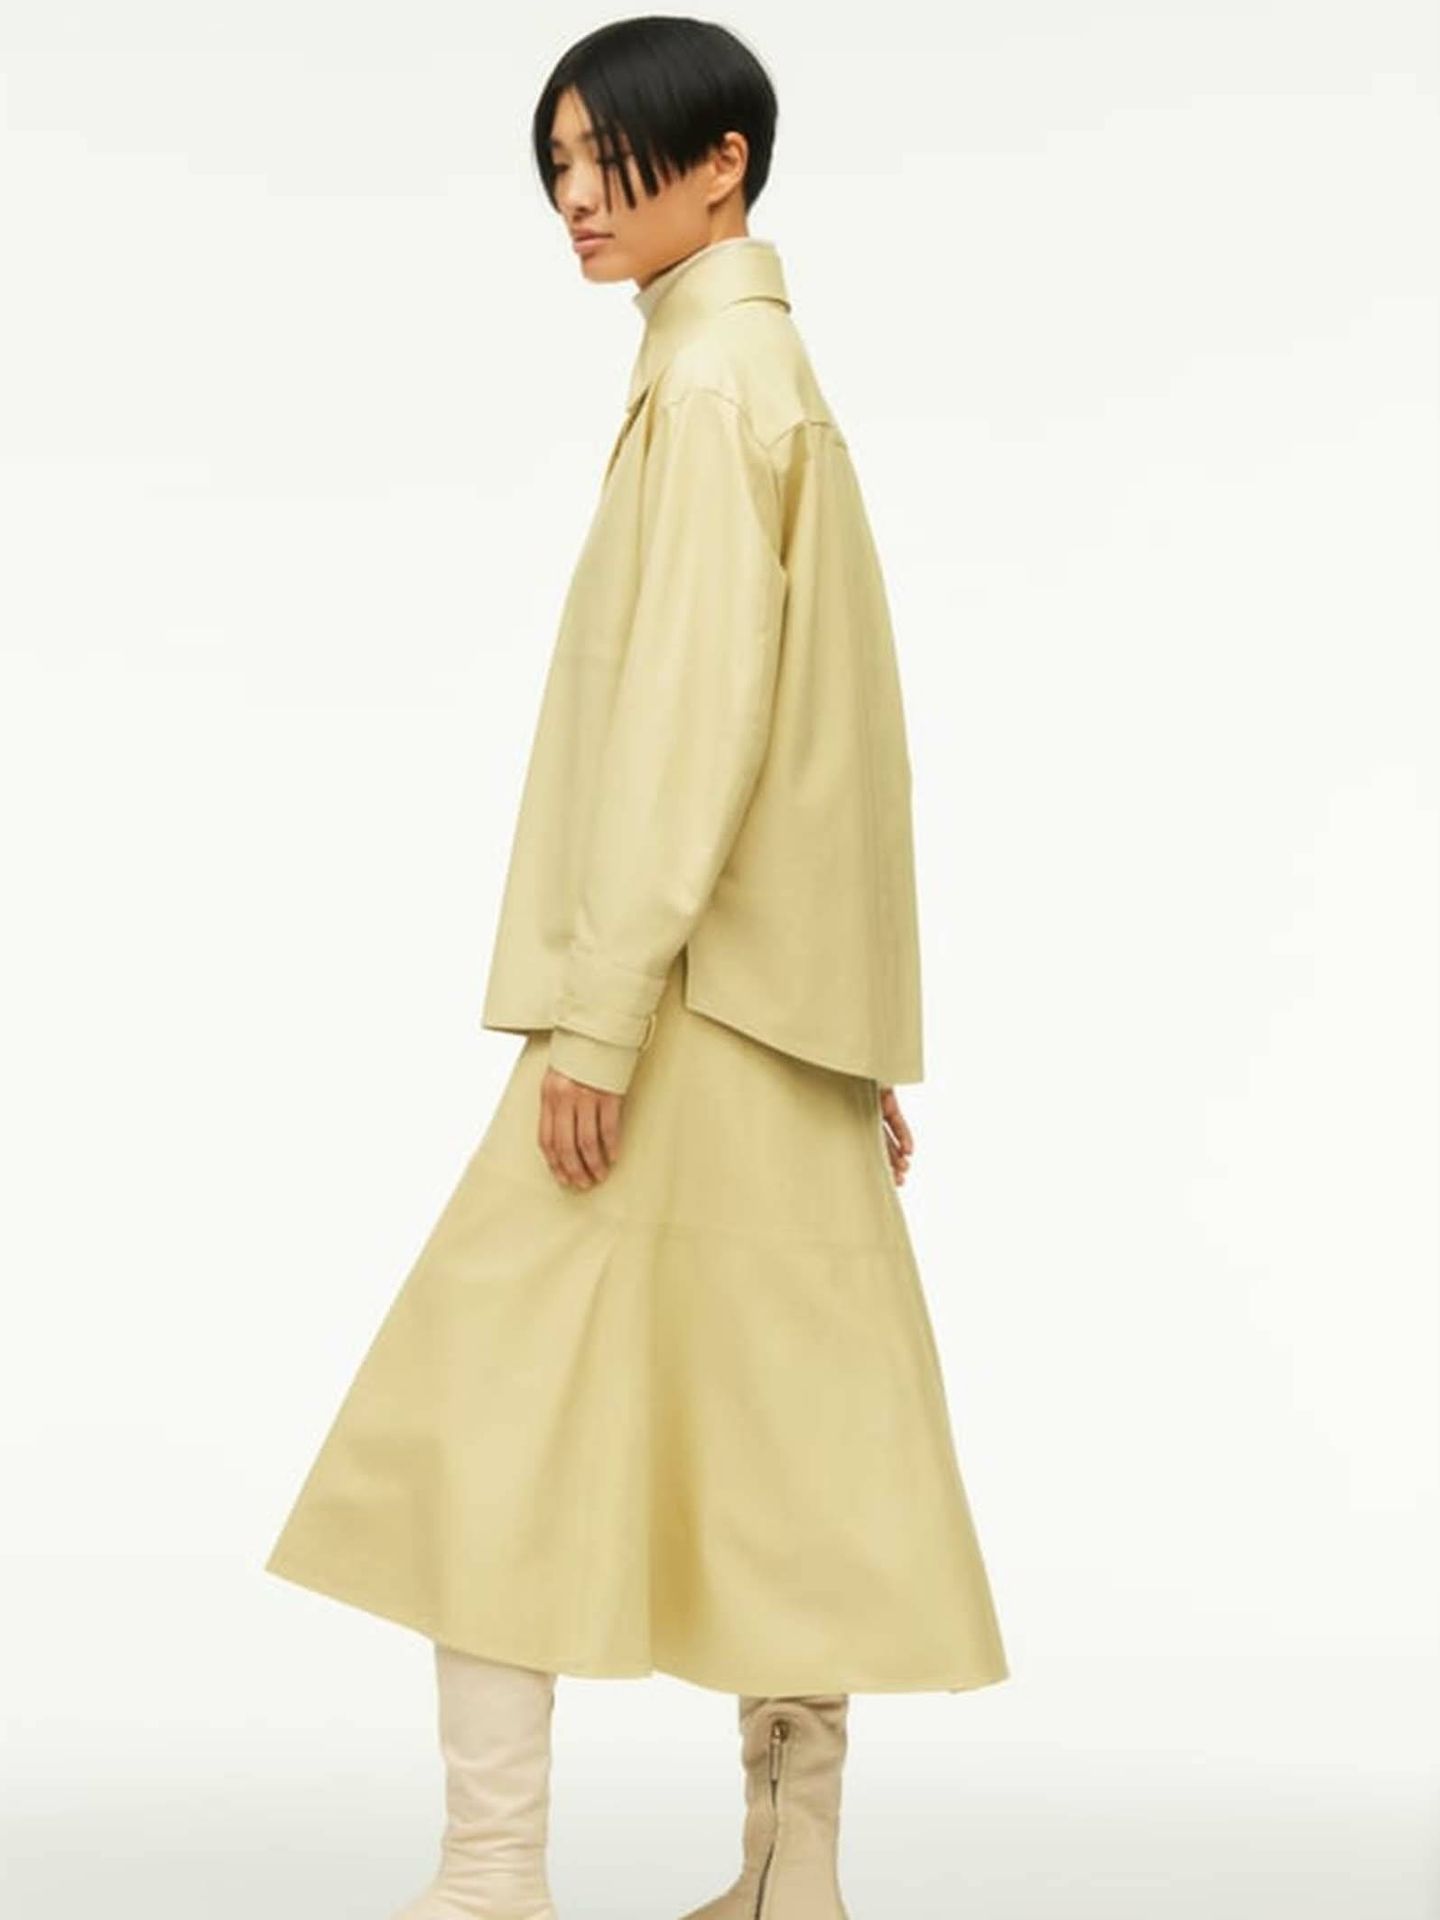 Zara Studio: Vestidos, abrigos y faldas sin género que nos transportan a Hollywood. (Zara/Cortesía)